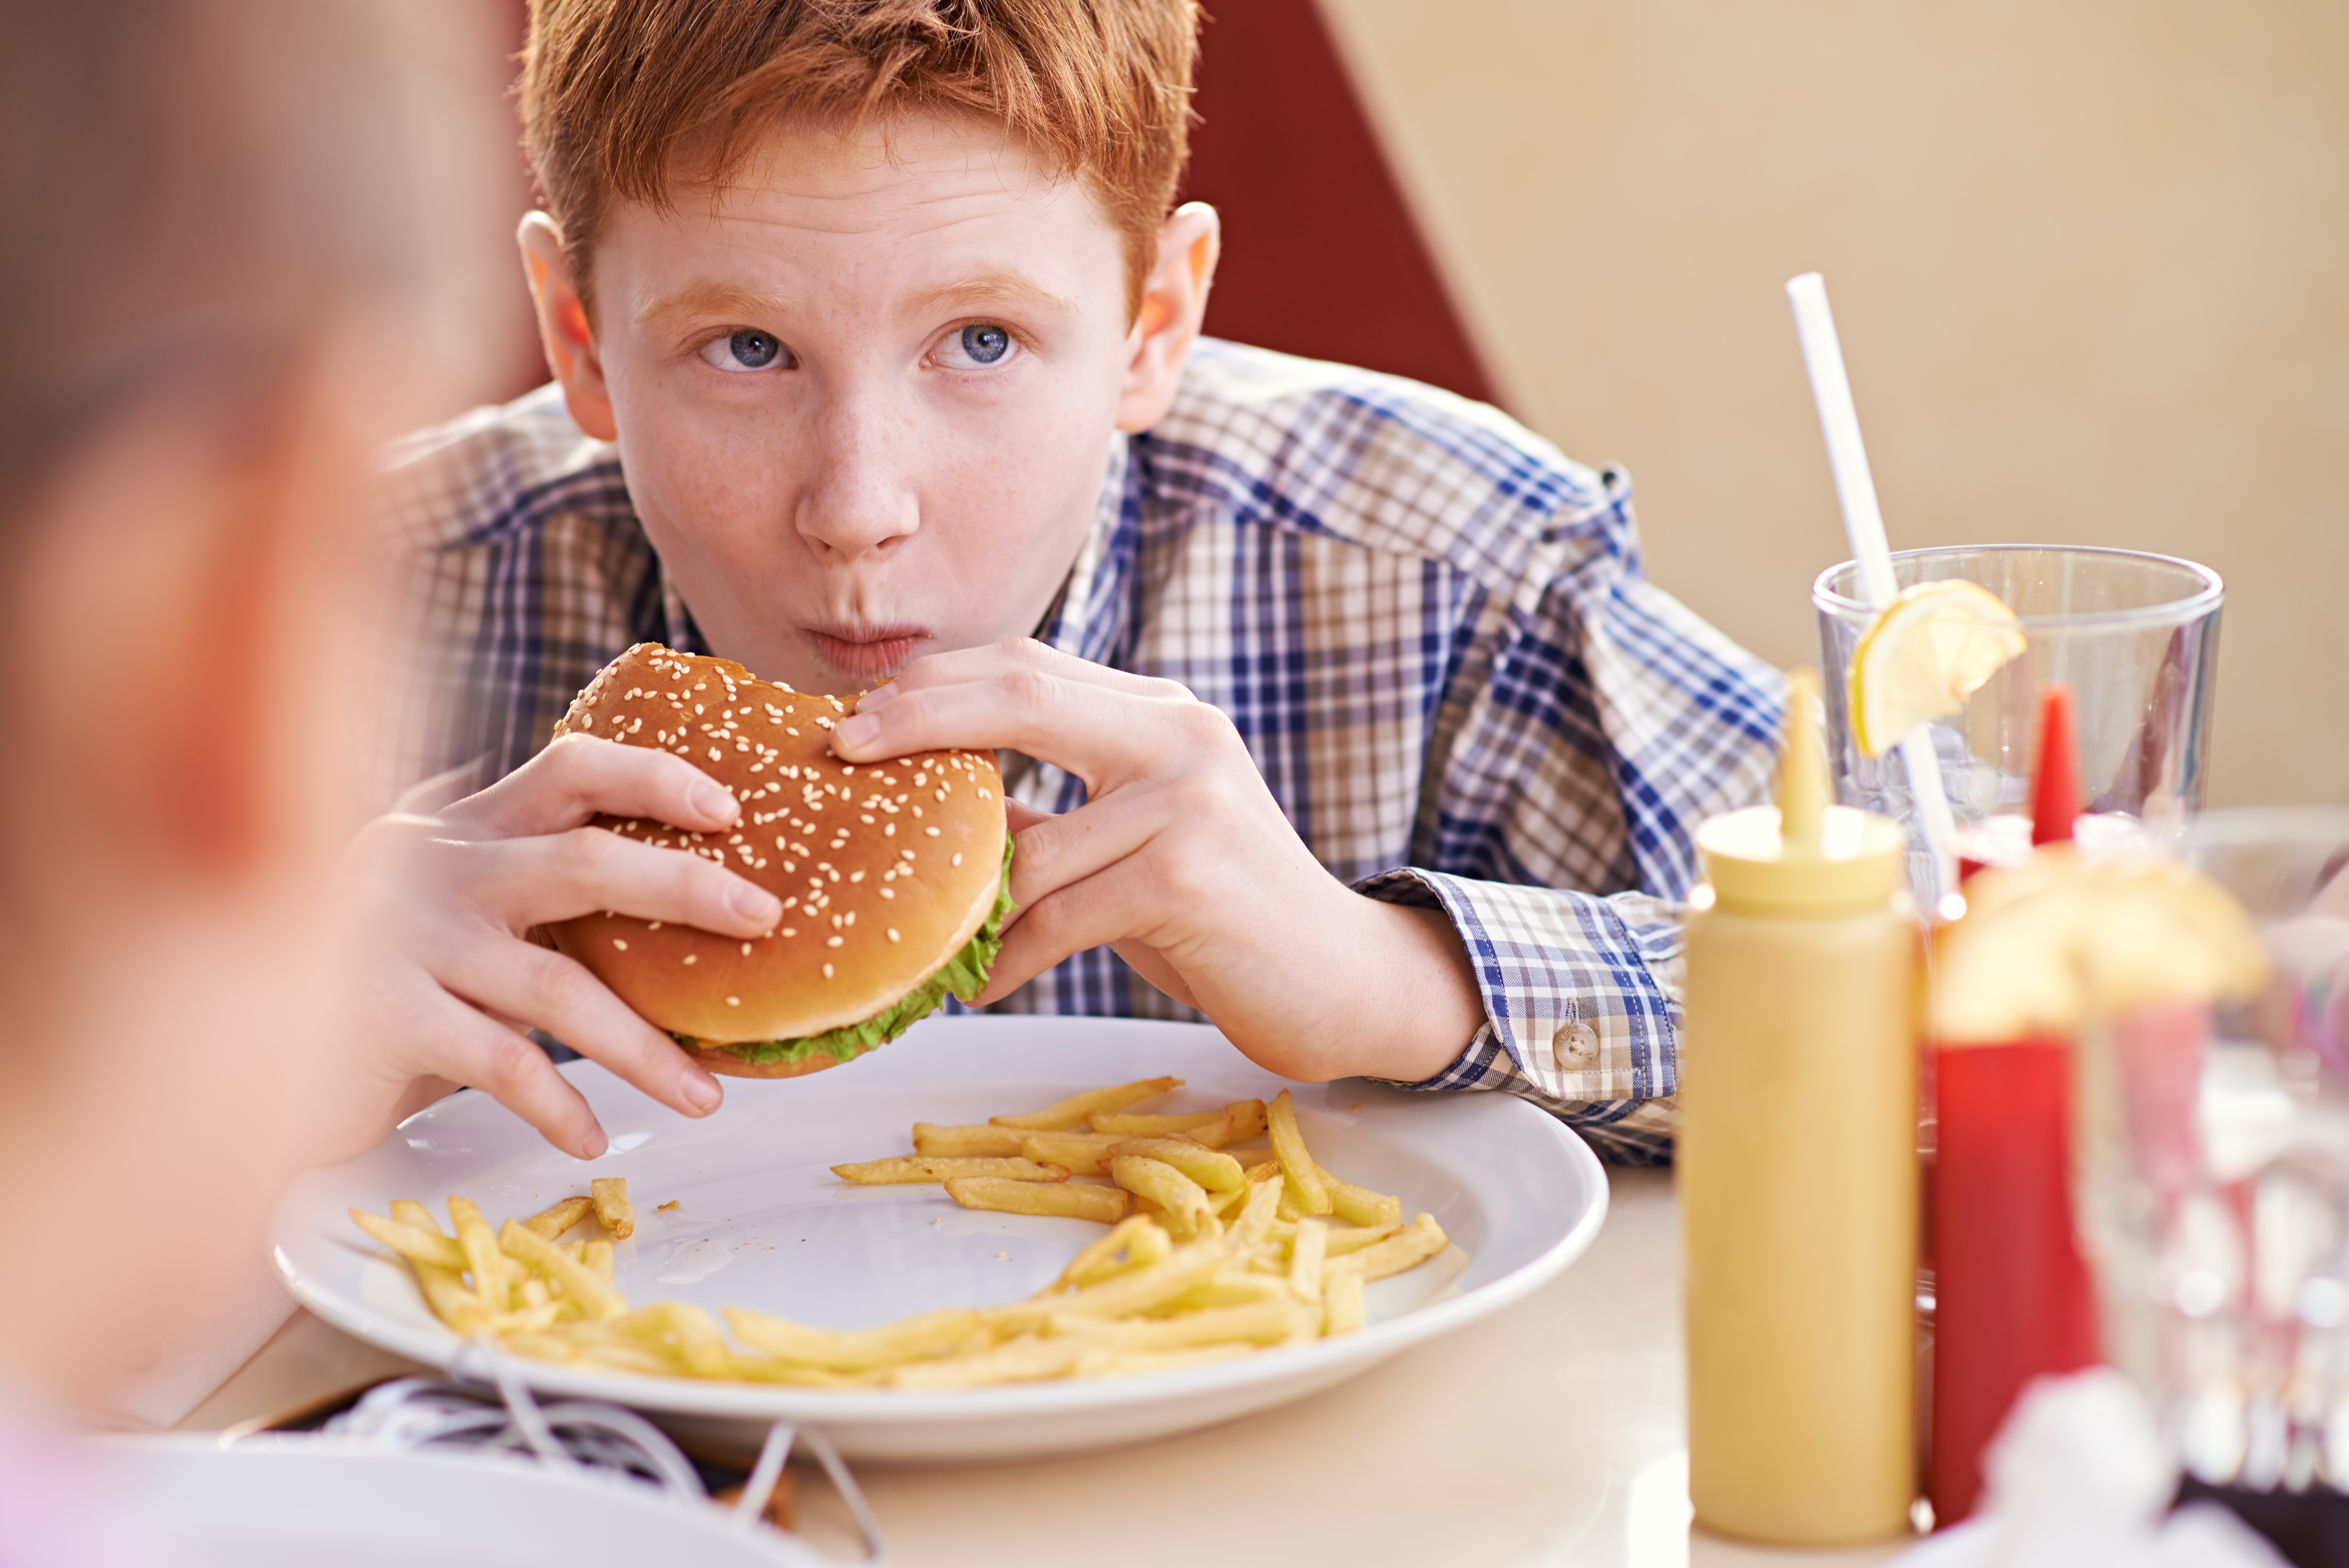 Teenage boy comfortably eating hamburger and fries